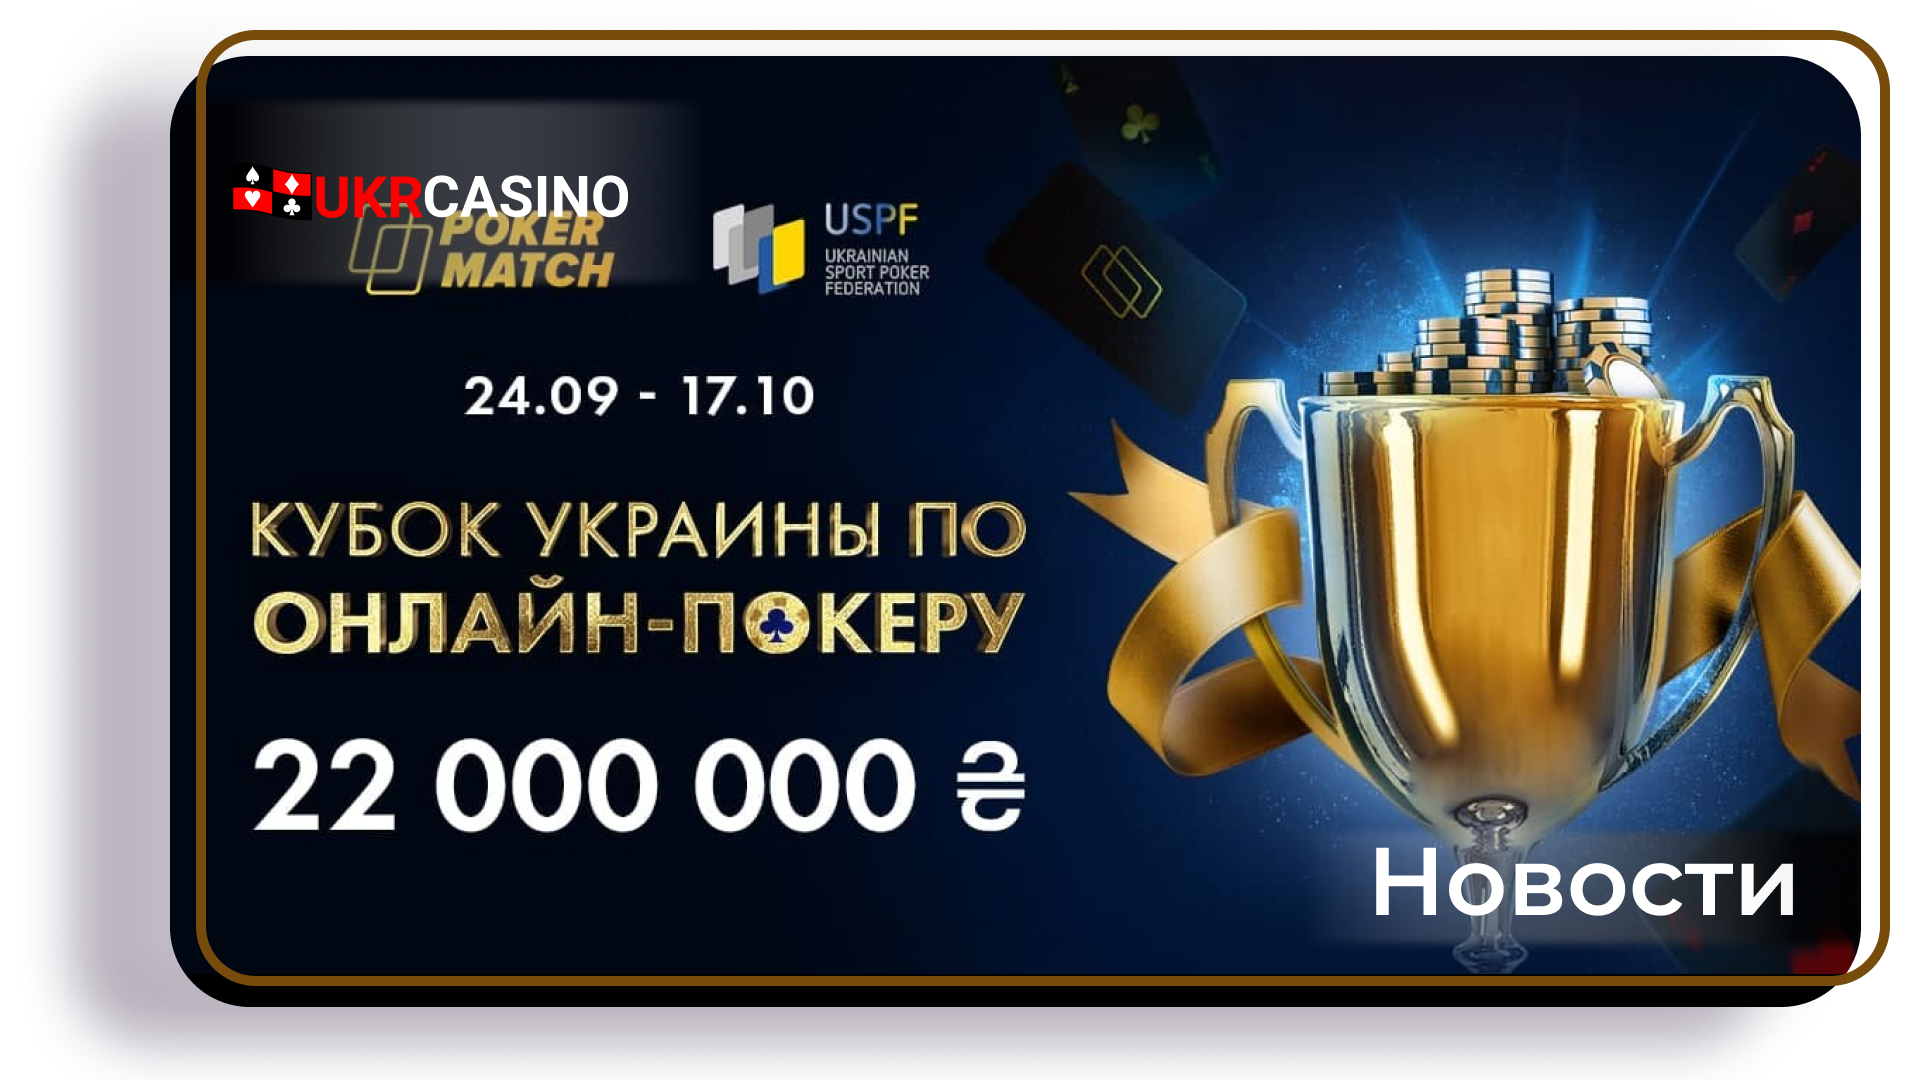 Онлайн-казино PokerMatch проведёт 72 турнира, в которых будет разыграно более 22 миллионов гривен